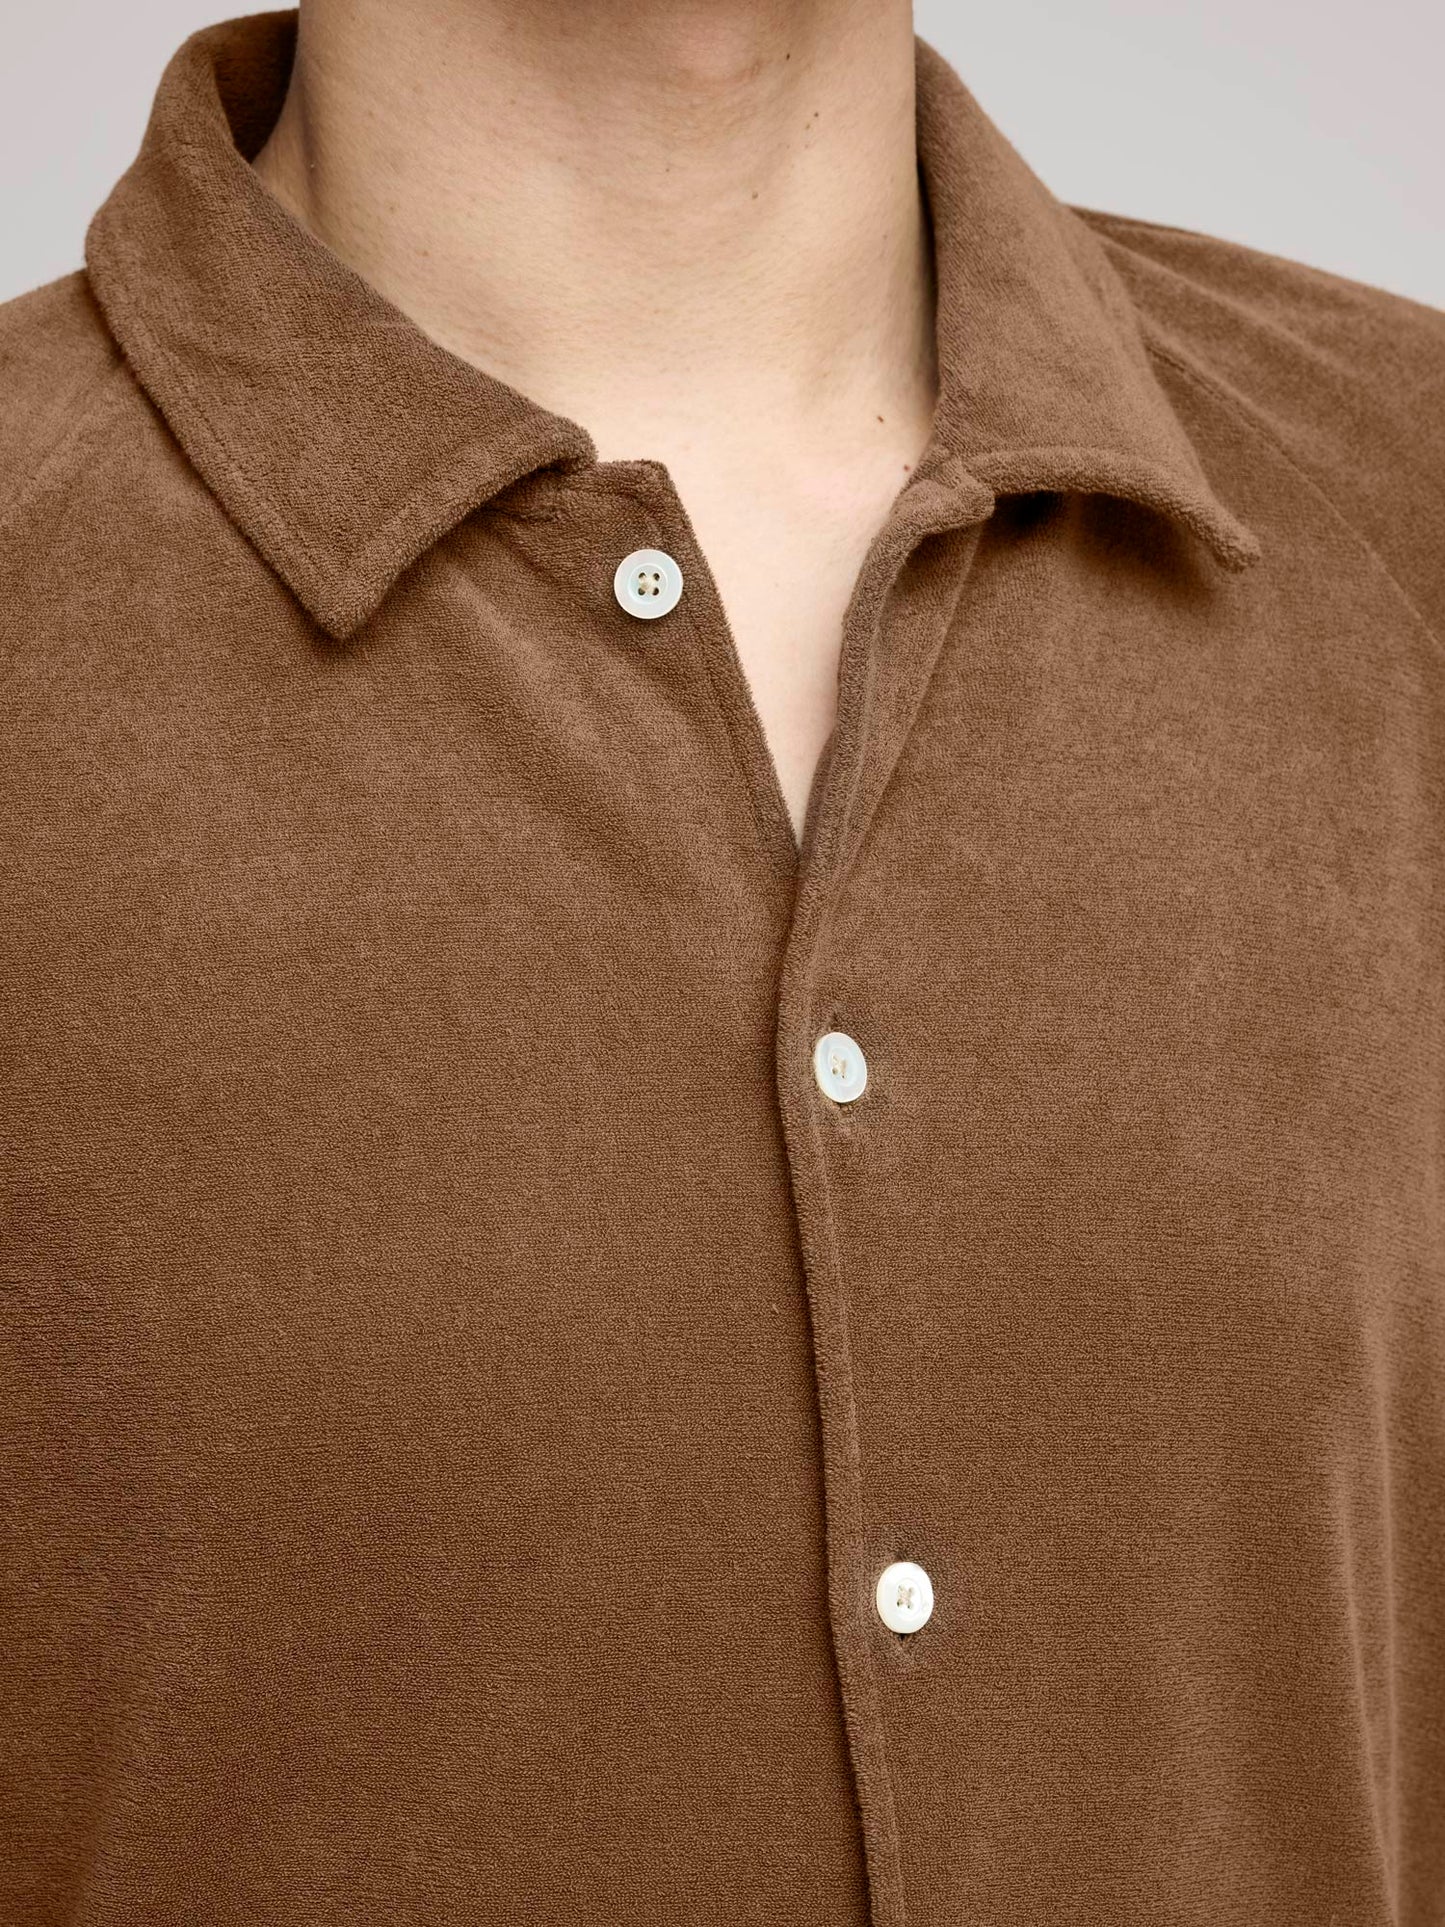 Cruiser Short Sleeve Terry Shirt, Brown